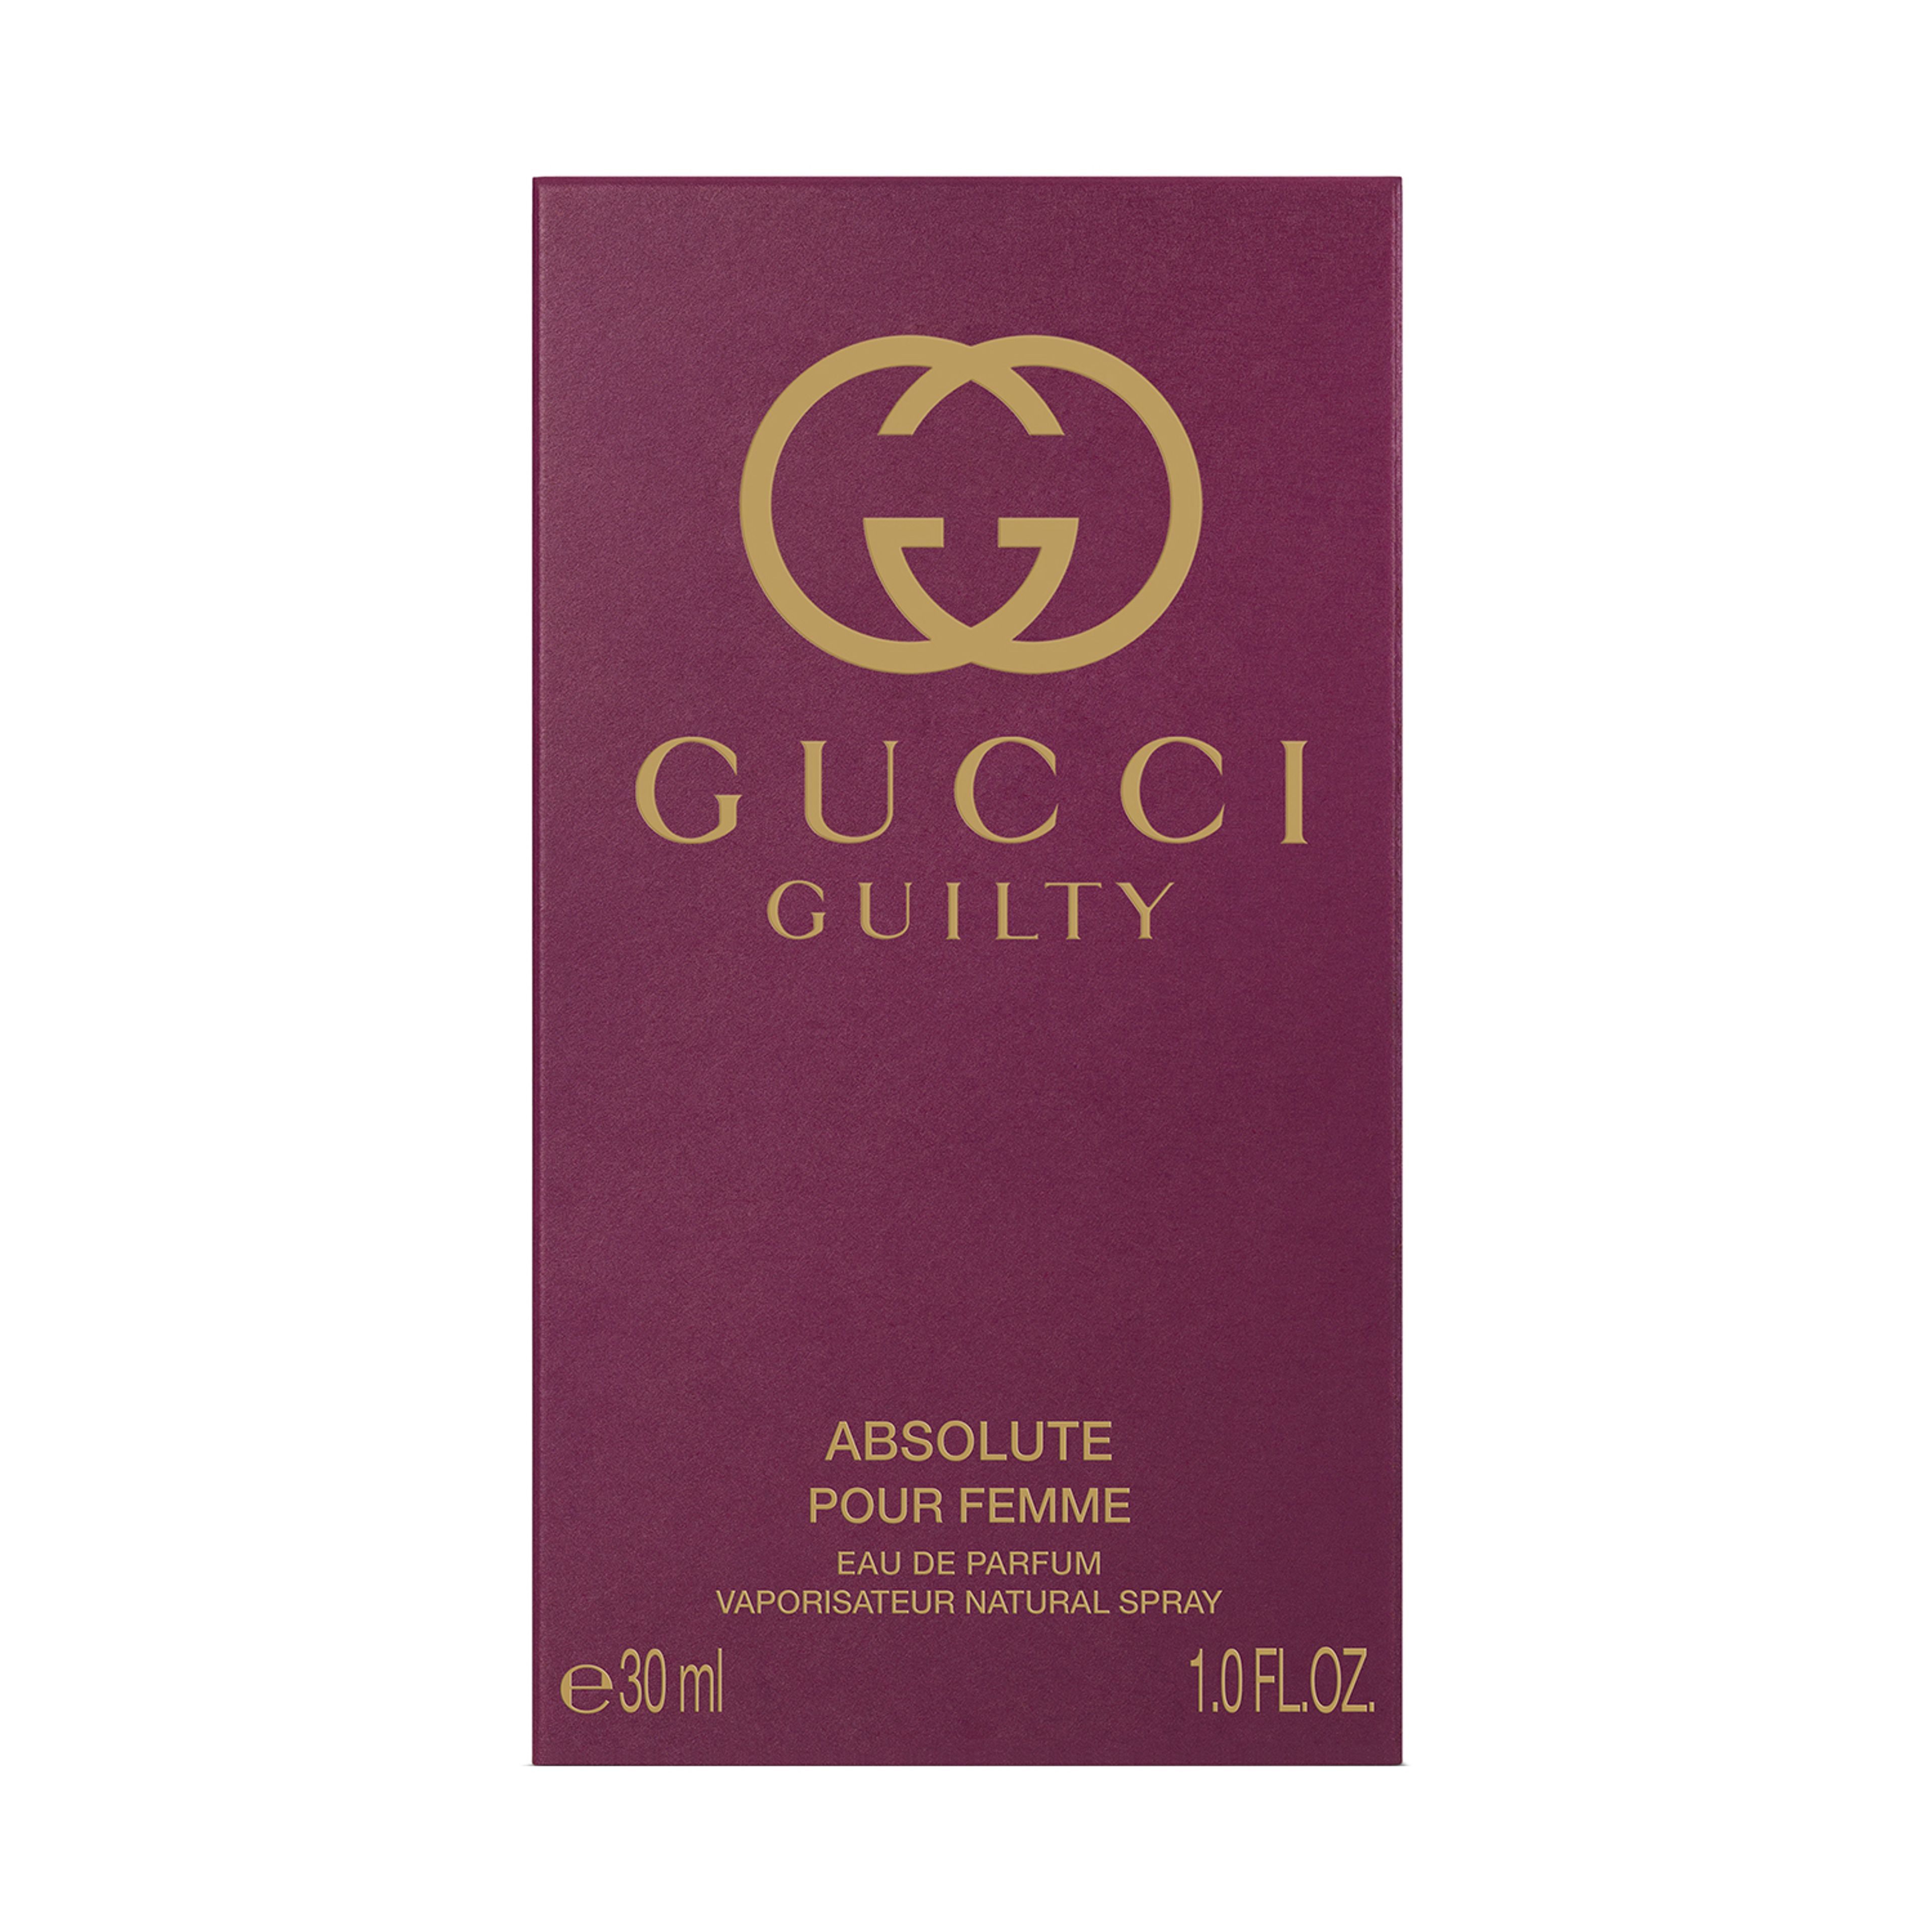 Gucci Gucci Guilty Absolute Pour Femme Eau De Parfum 3